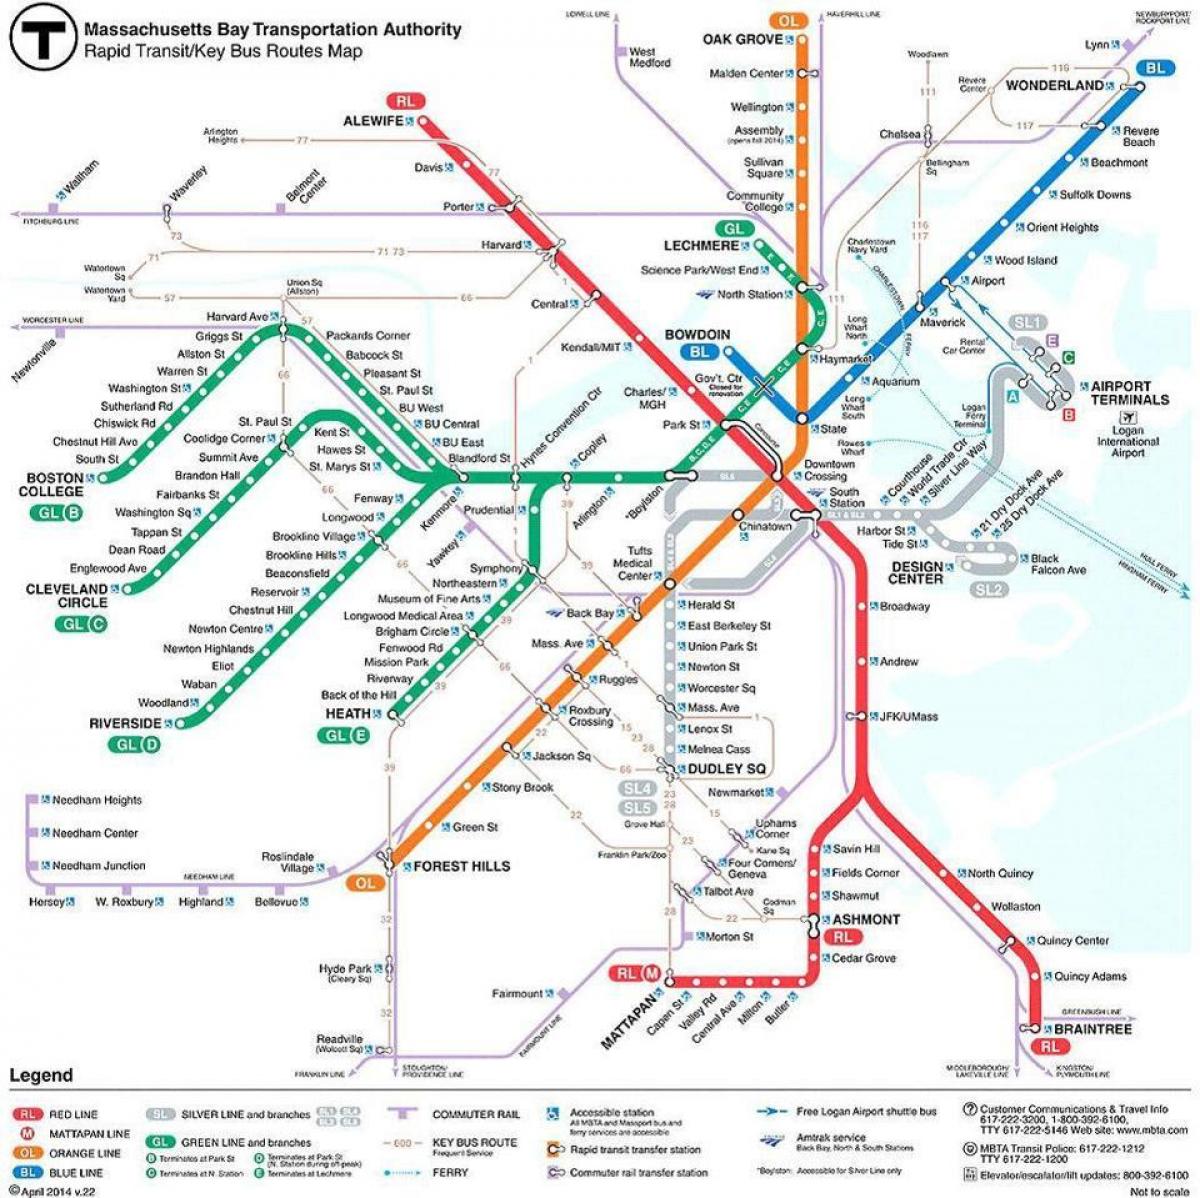 MBTA बोस्टन नक्शा